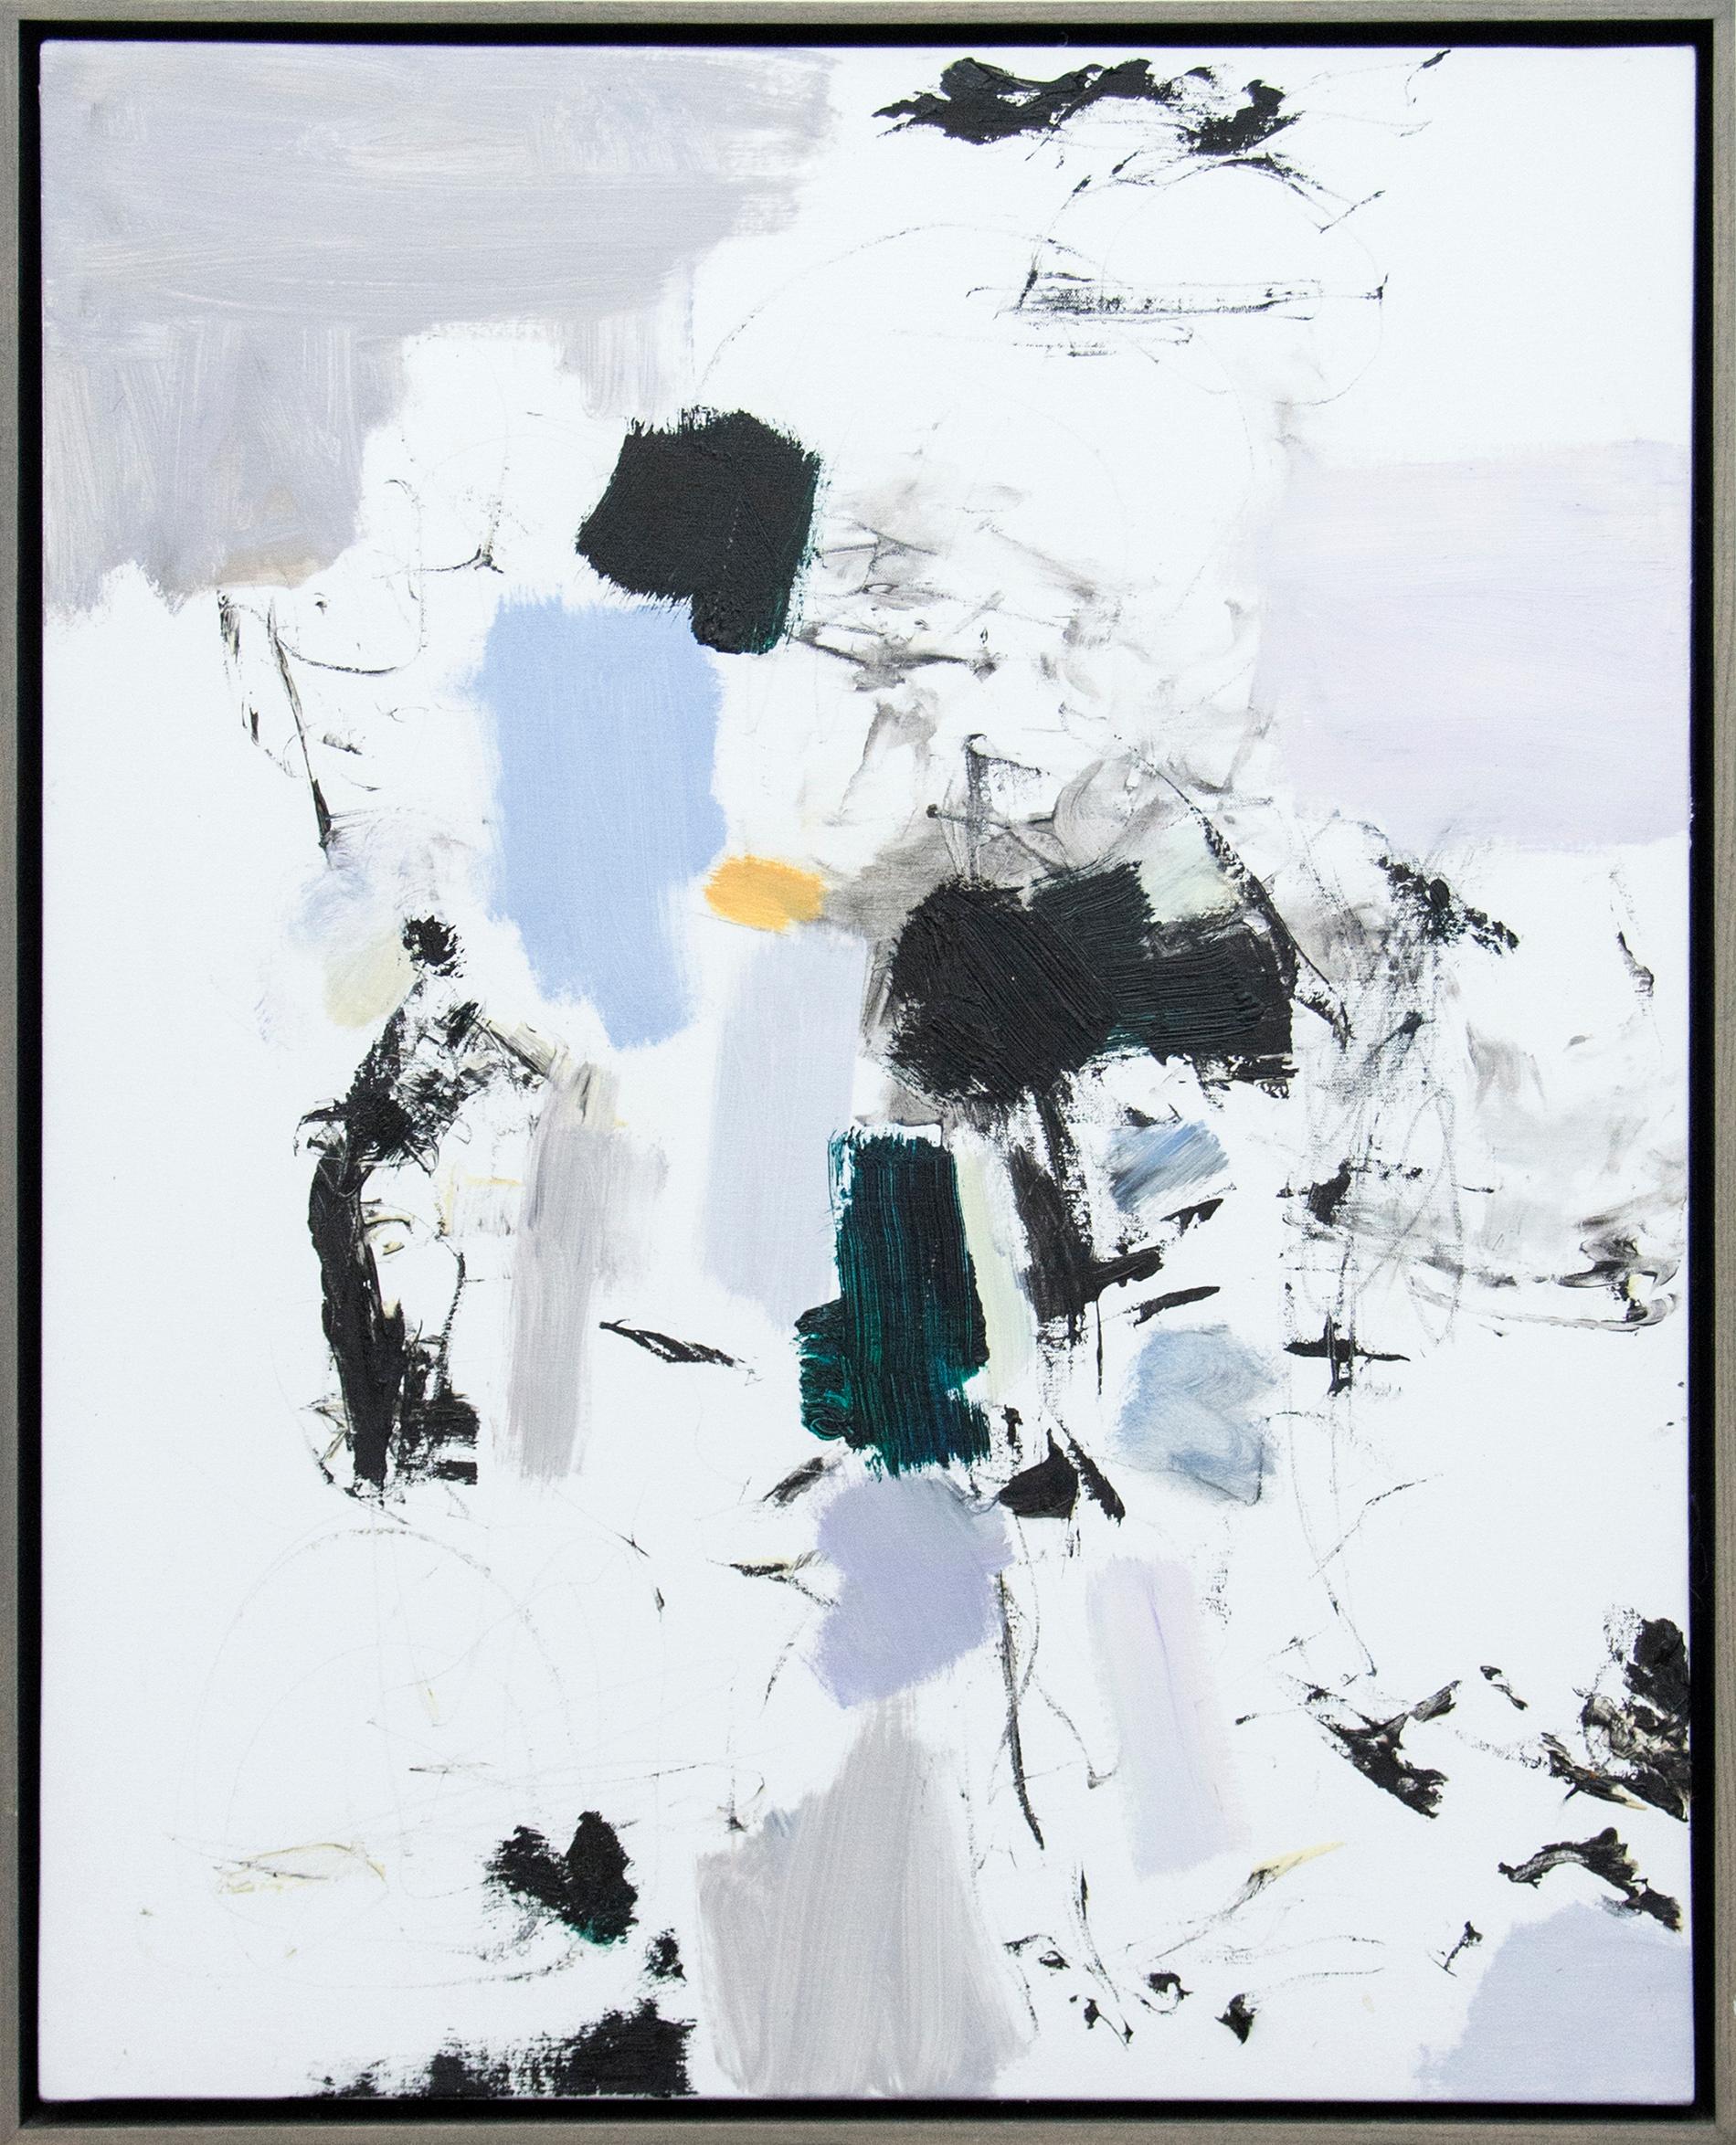 Scott Pattinson Abstract Painting – Karoi Nr. 2 -  Leuchtend, blau, weiß, farbenfroh, gestisch, abstrakt, Öl auf Leinwand